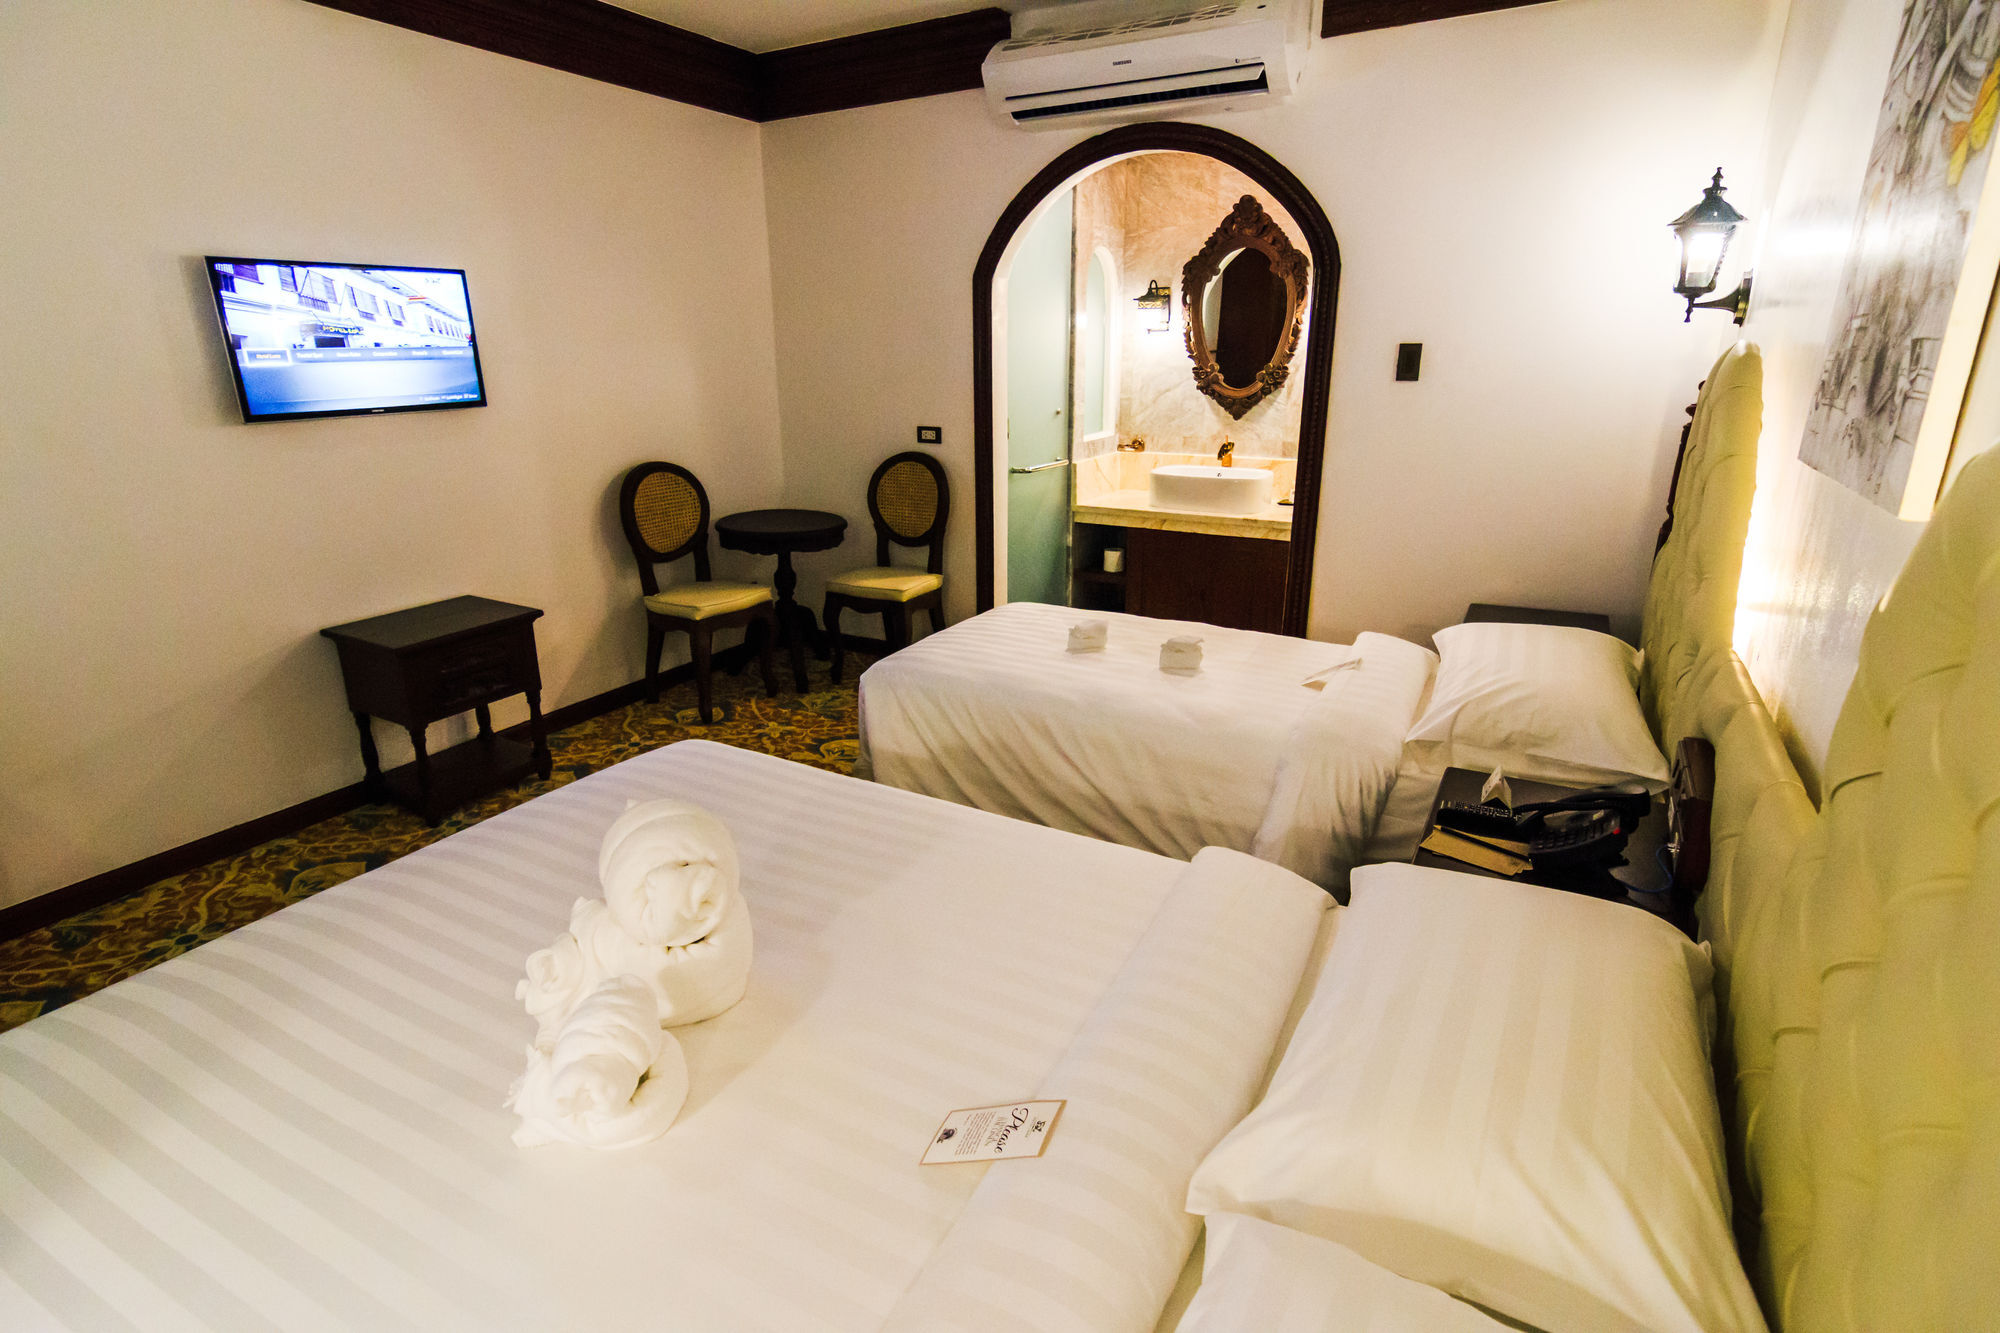 Hotel Luna Annex Ilocos Luaran gambar